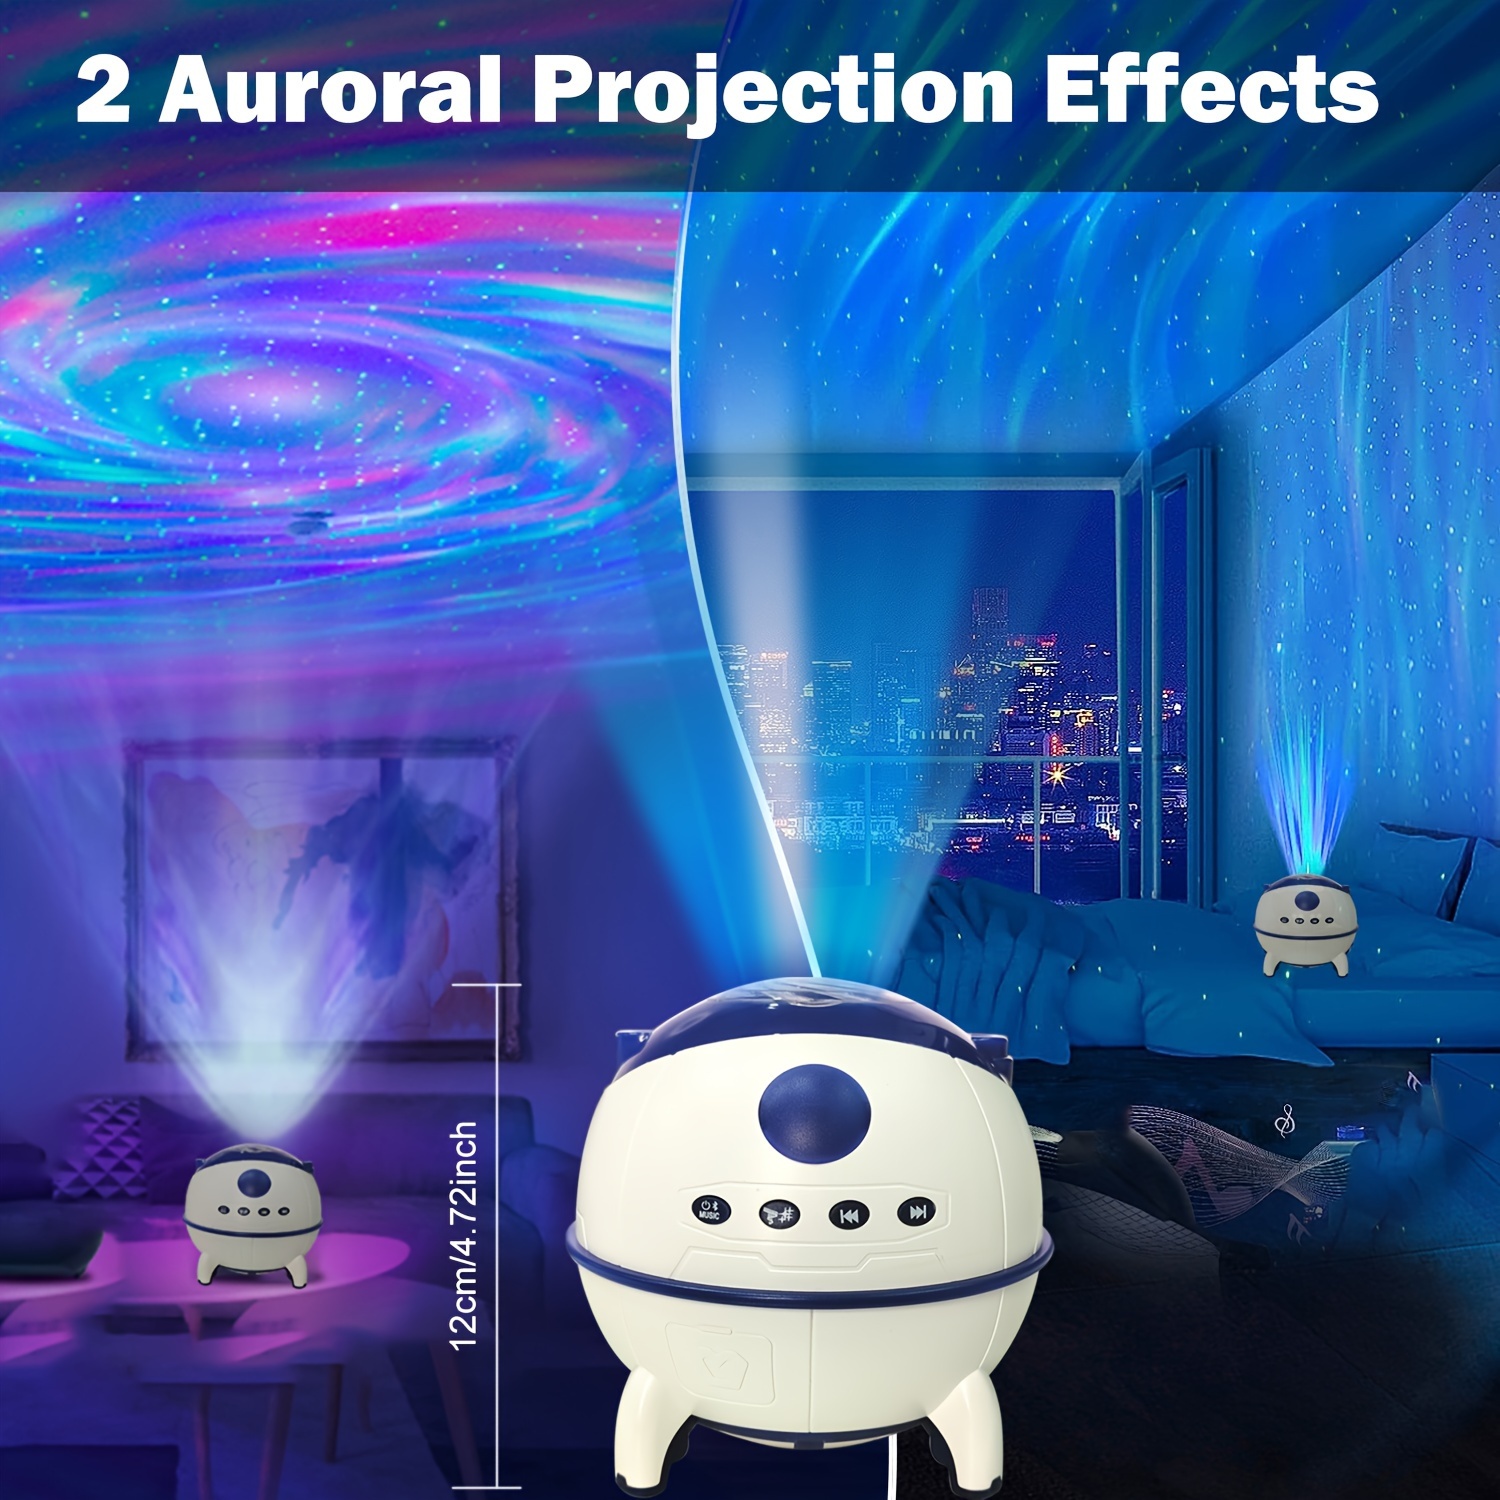 🌠 Mejor Proyector LED Galaxia, Aurora Boreal, Luna y estrellas